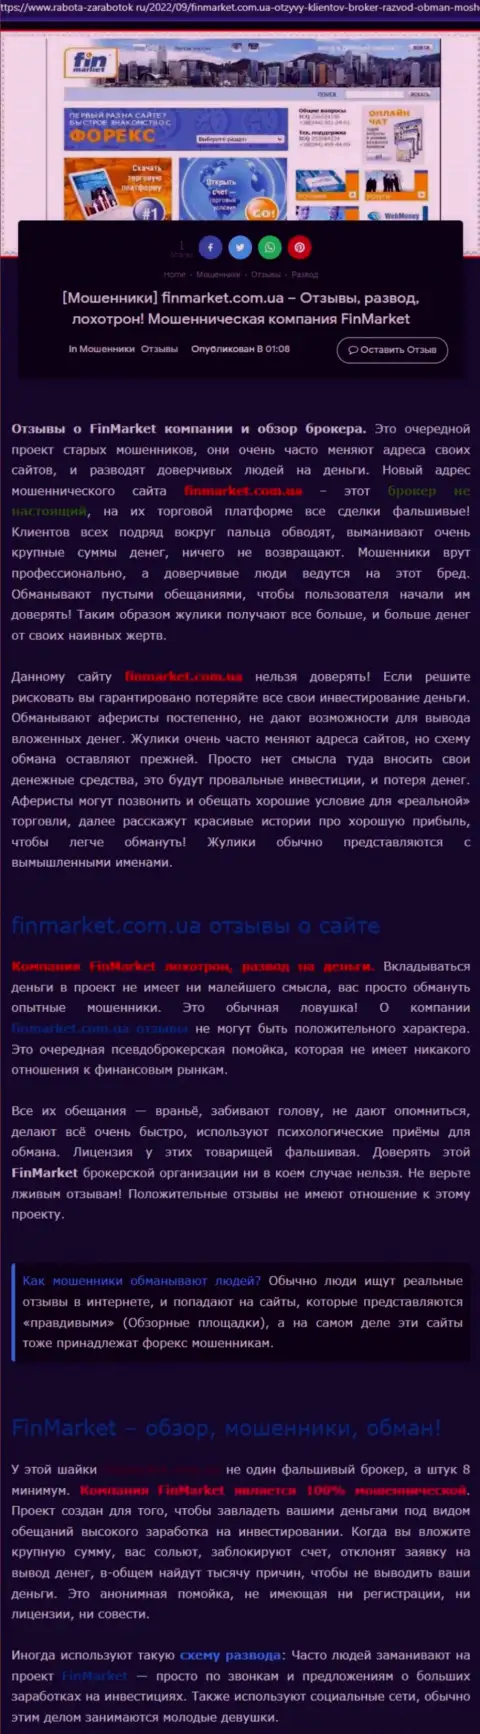 Разбор деяний конторы FinMarket Com Ua - лишают средств жестко (обзор)